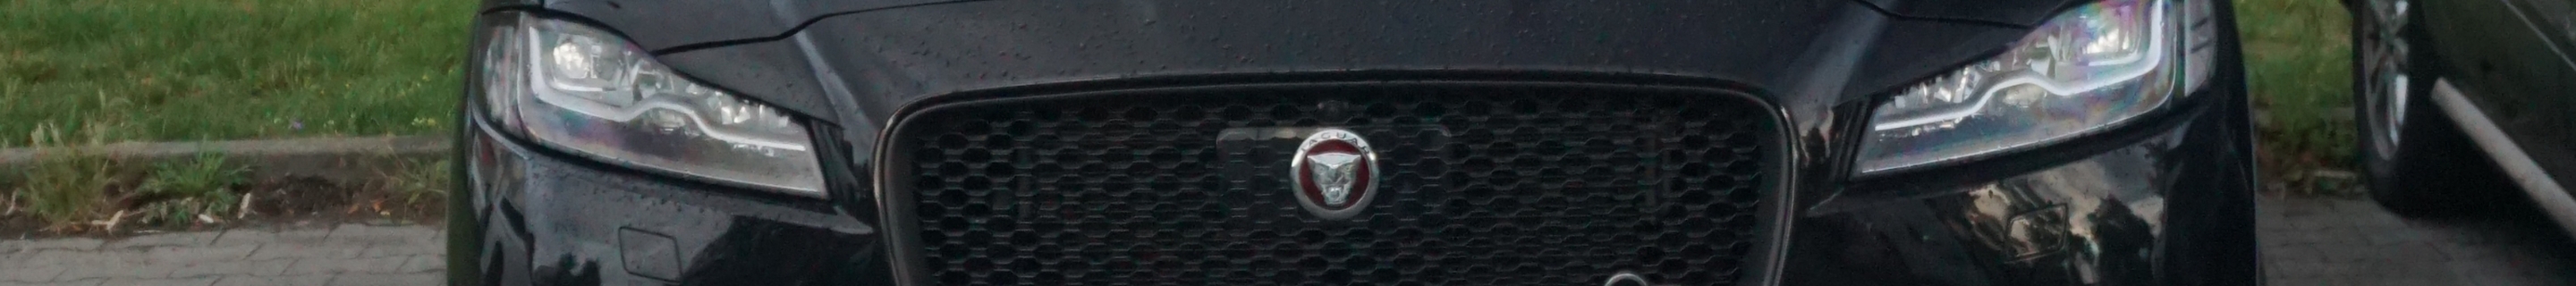 Jaguar F-PACE SVR